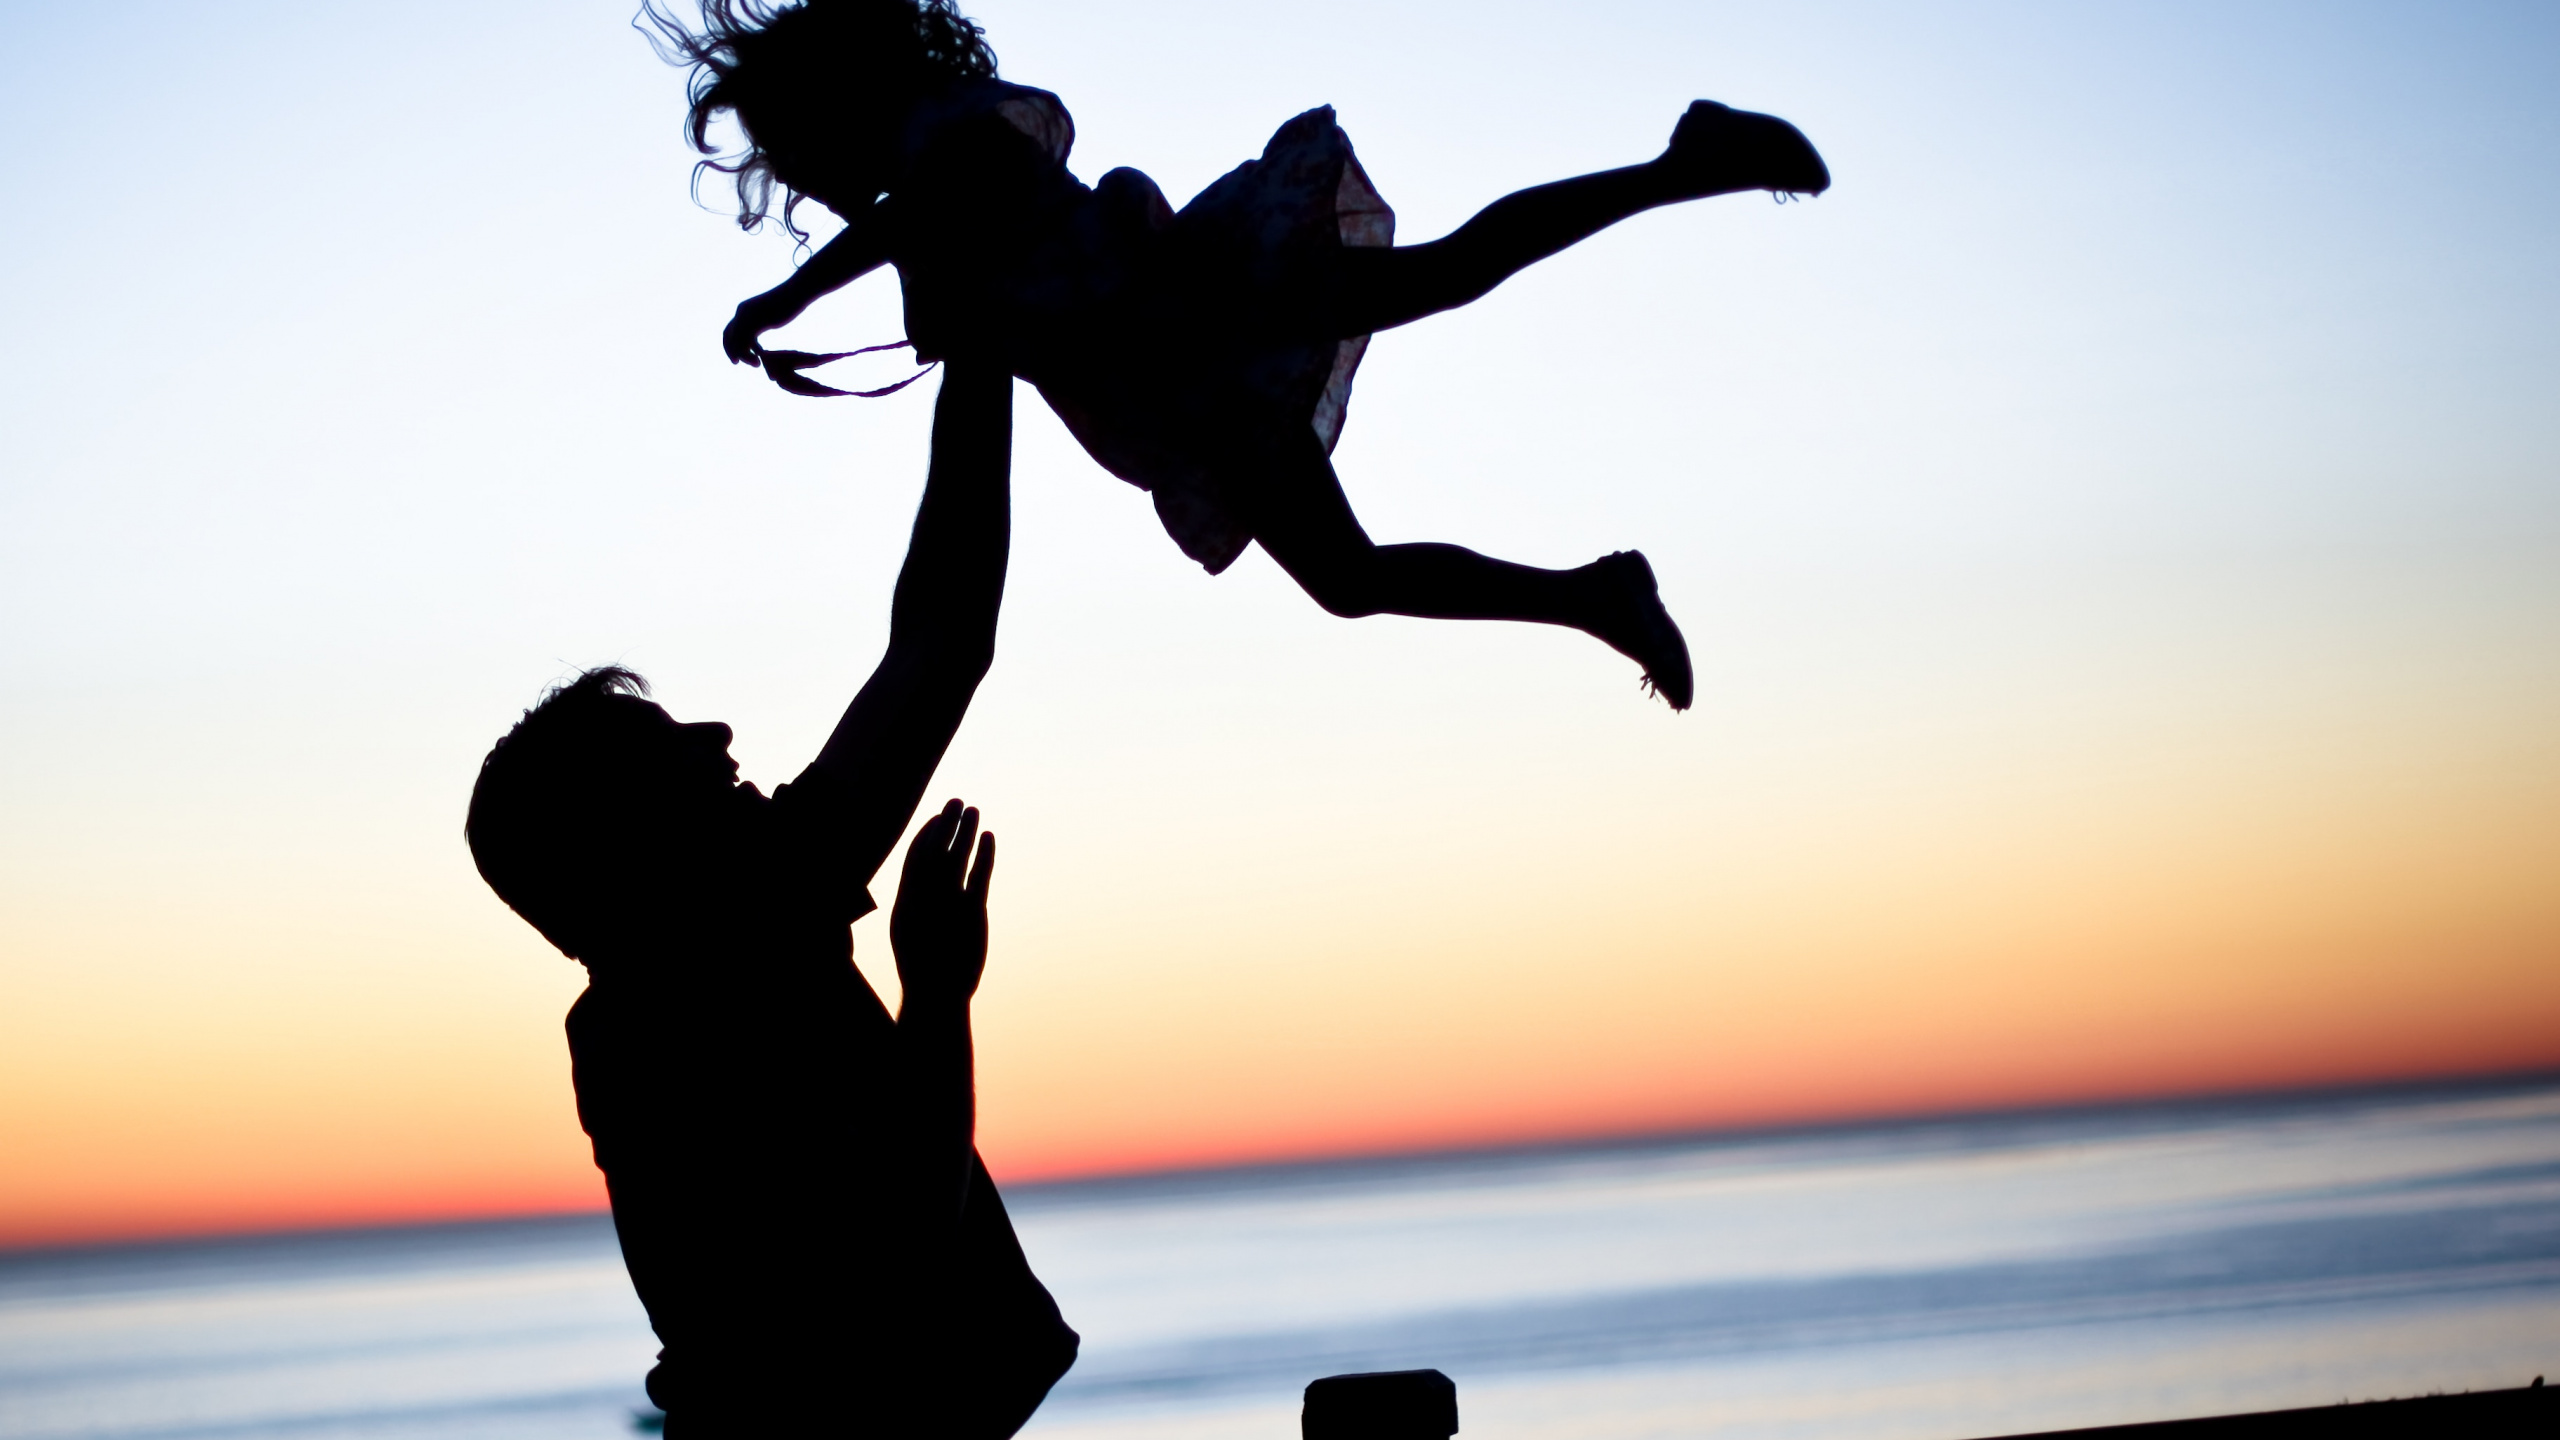 爸爸, 女儿, 家庭, 人们在自然界, 跳跃 壁纸 2560x1440 允许